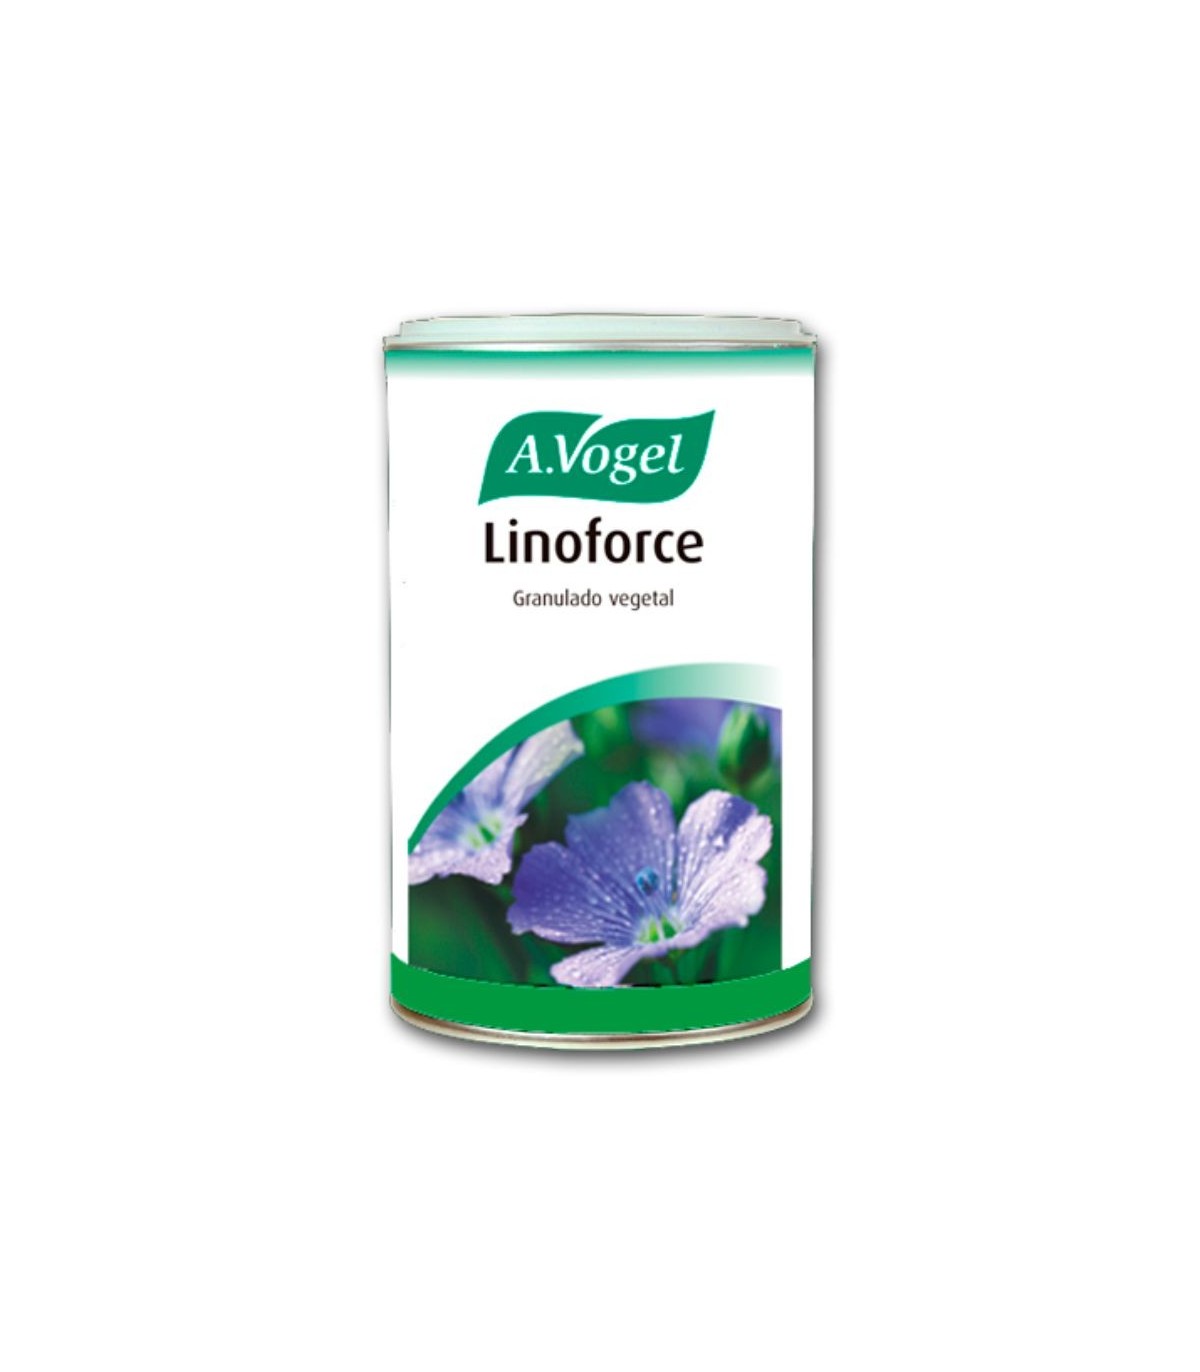 Linoforce Favorece el funcionamiento intestinal Granulado vegetal a base de semillas de lino, hojas de sen y corteza de frángula.